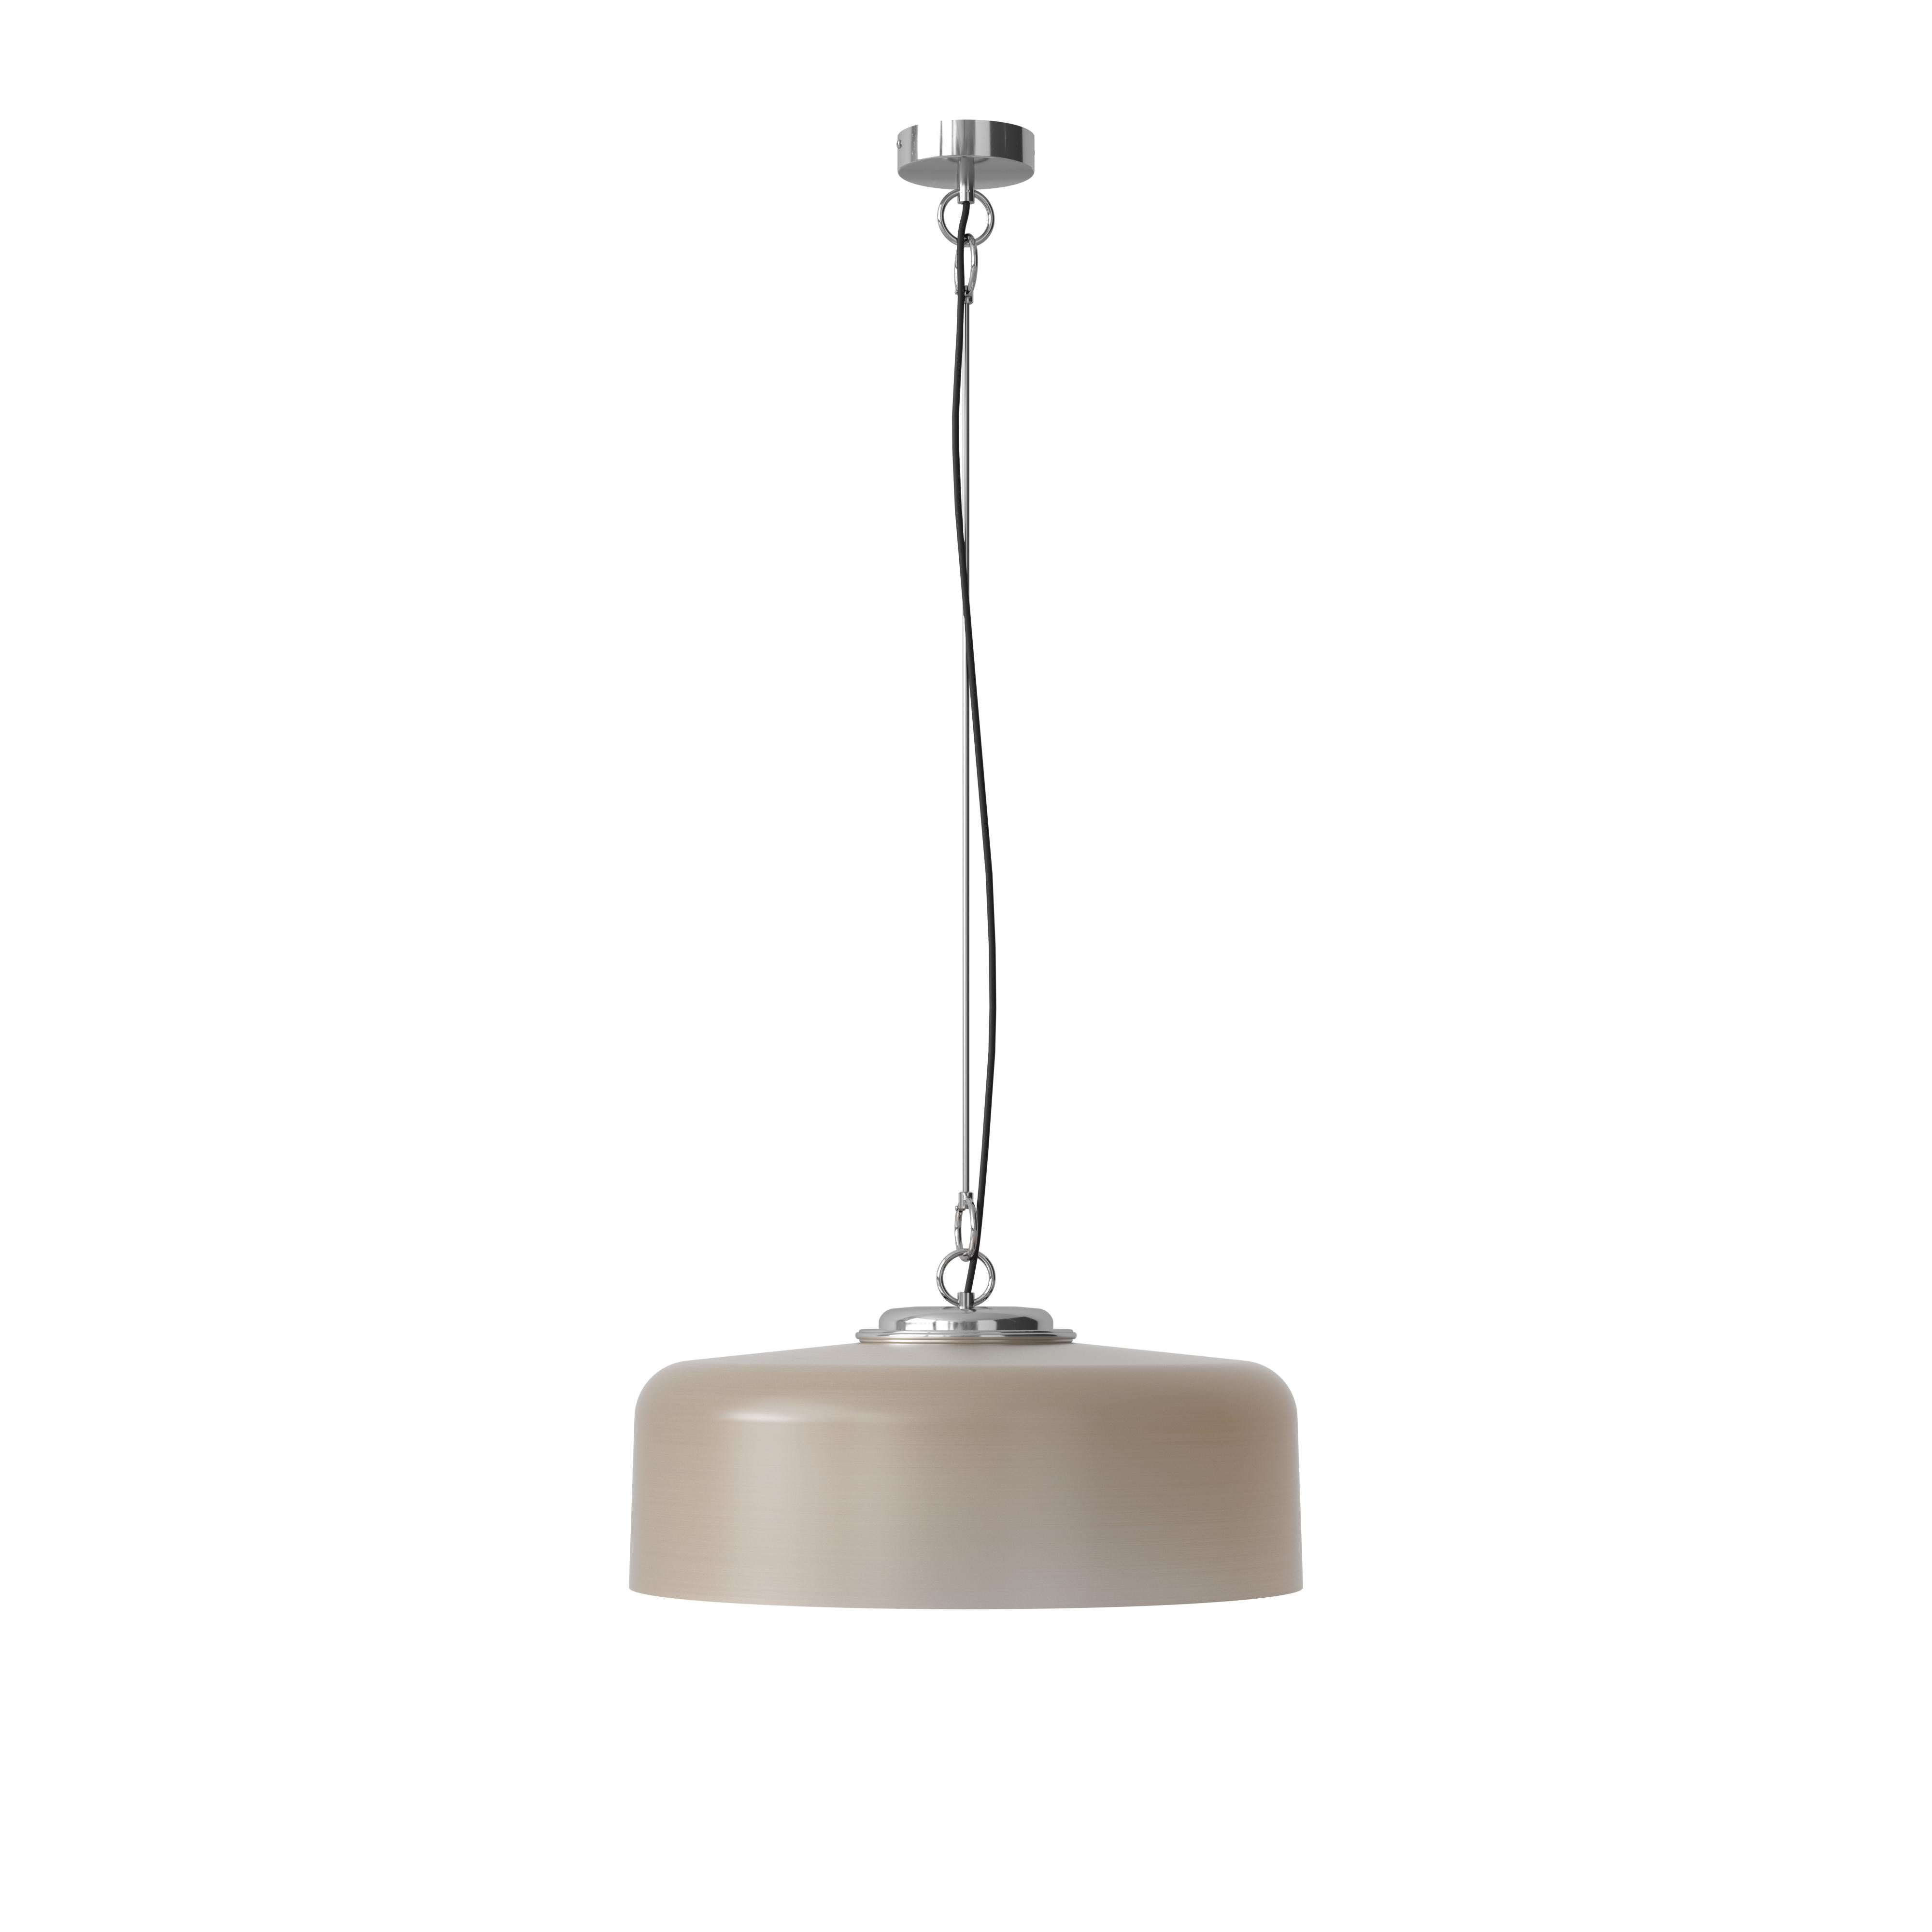 Franco Albini & Franca Helg 'Model 2050' Suspension Lamp in Smoke for Astep For Sale 7